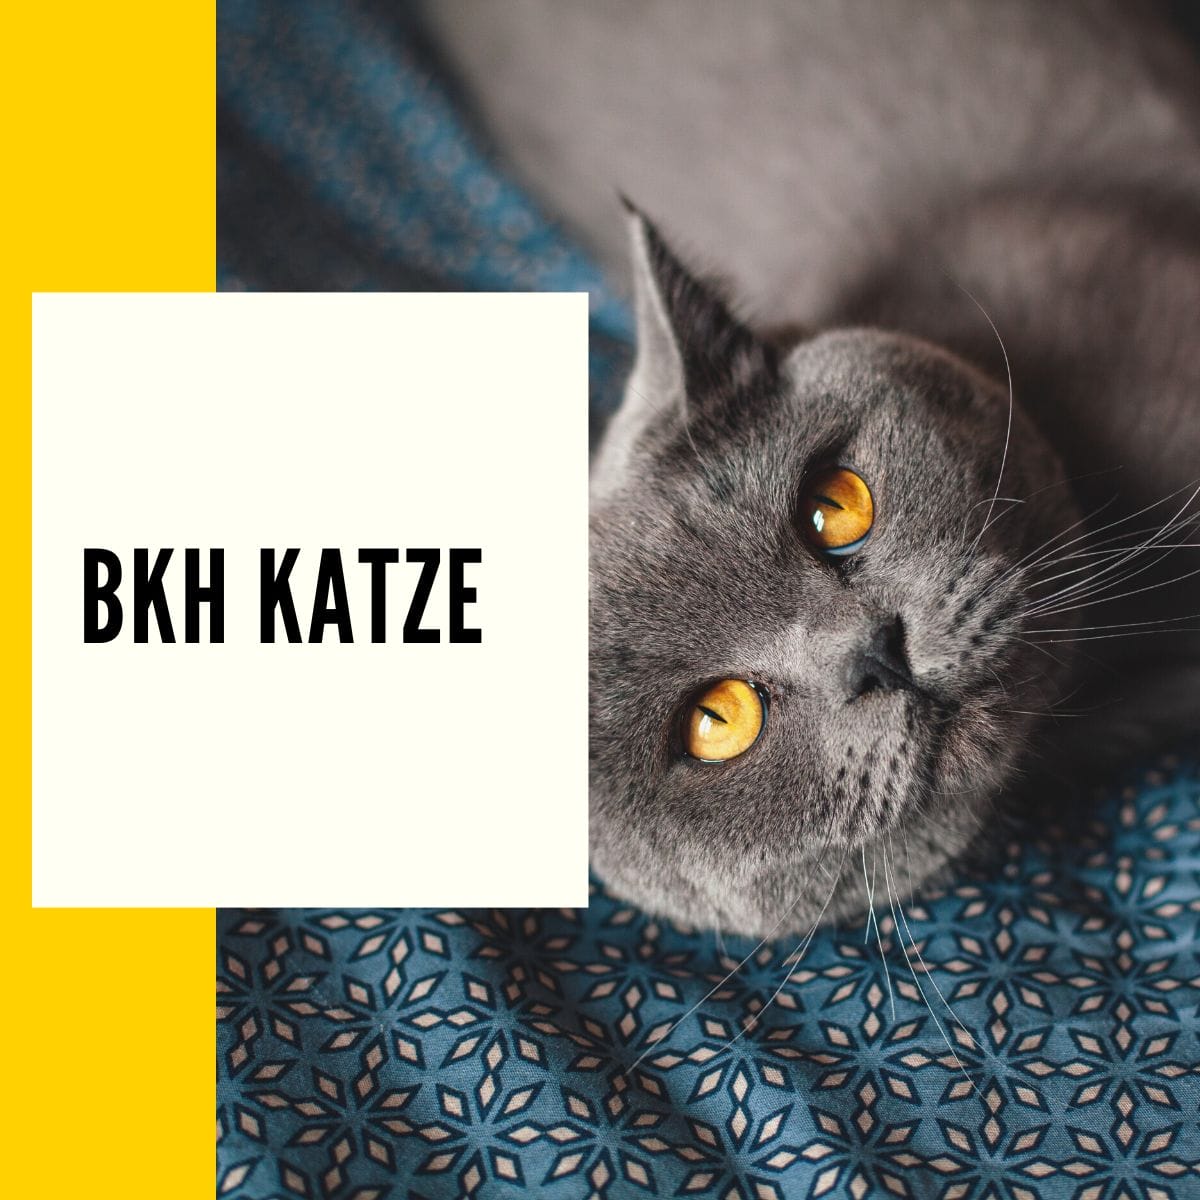 BKH Katze - Ursprung, Wesen & Charakter der British Kurzhaar Katze